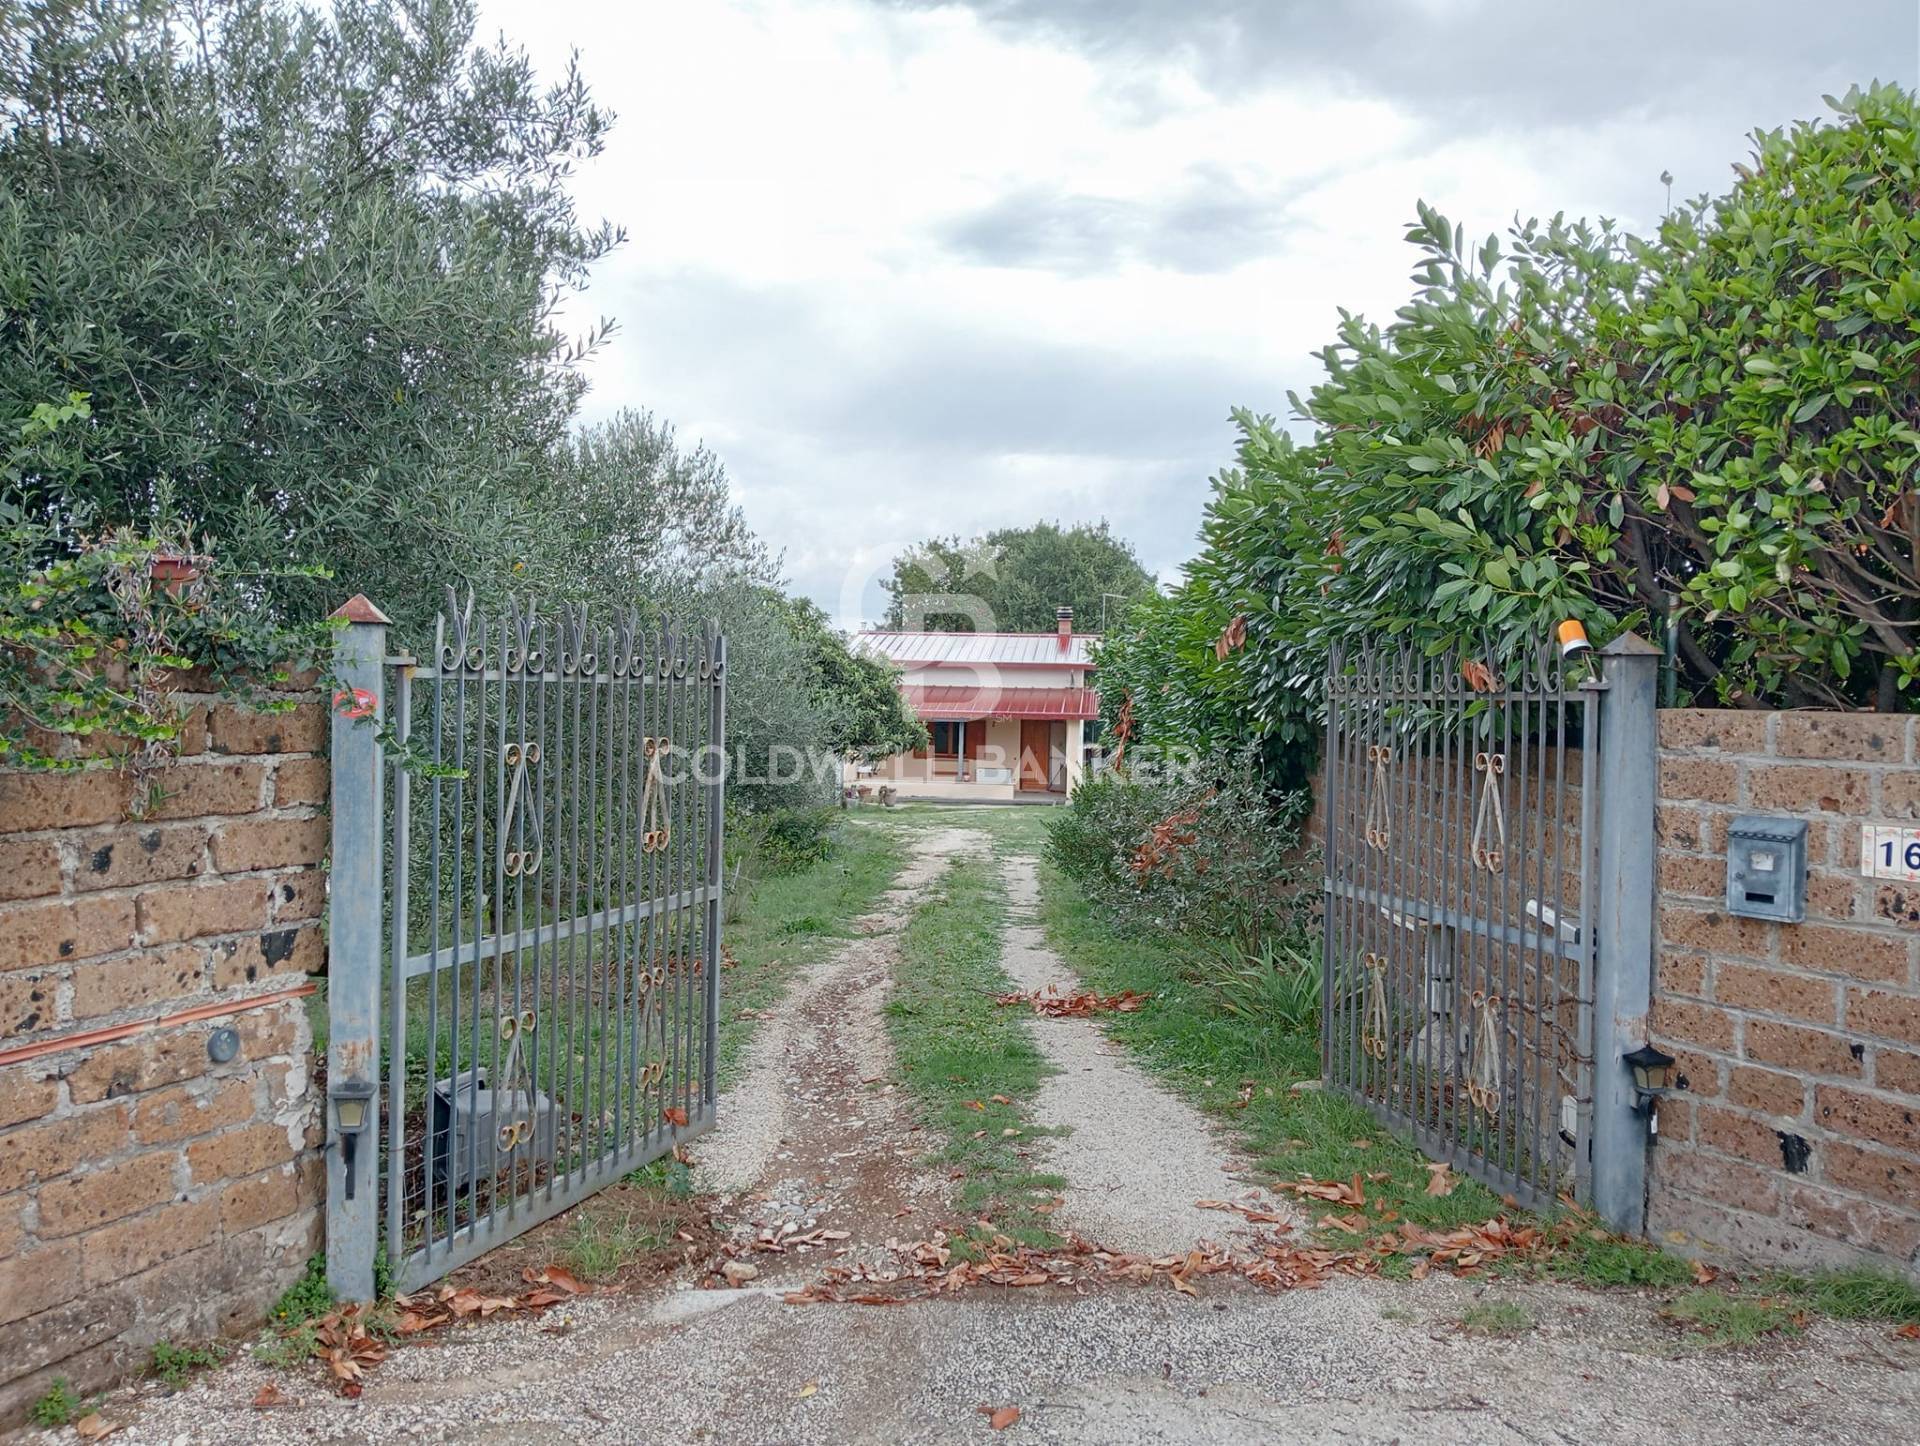 Rustico / Casale in vendita a Gallese, 3 locali, prezzo € 40.000 | PortaleAgenzieImmobiliari.it